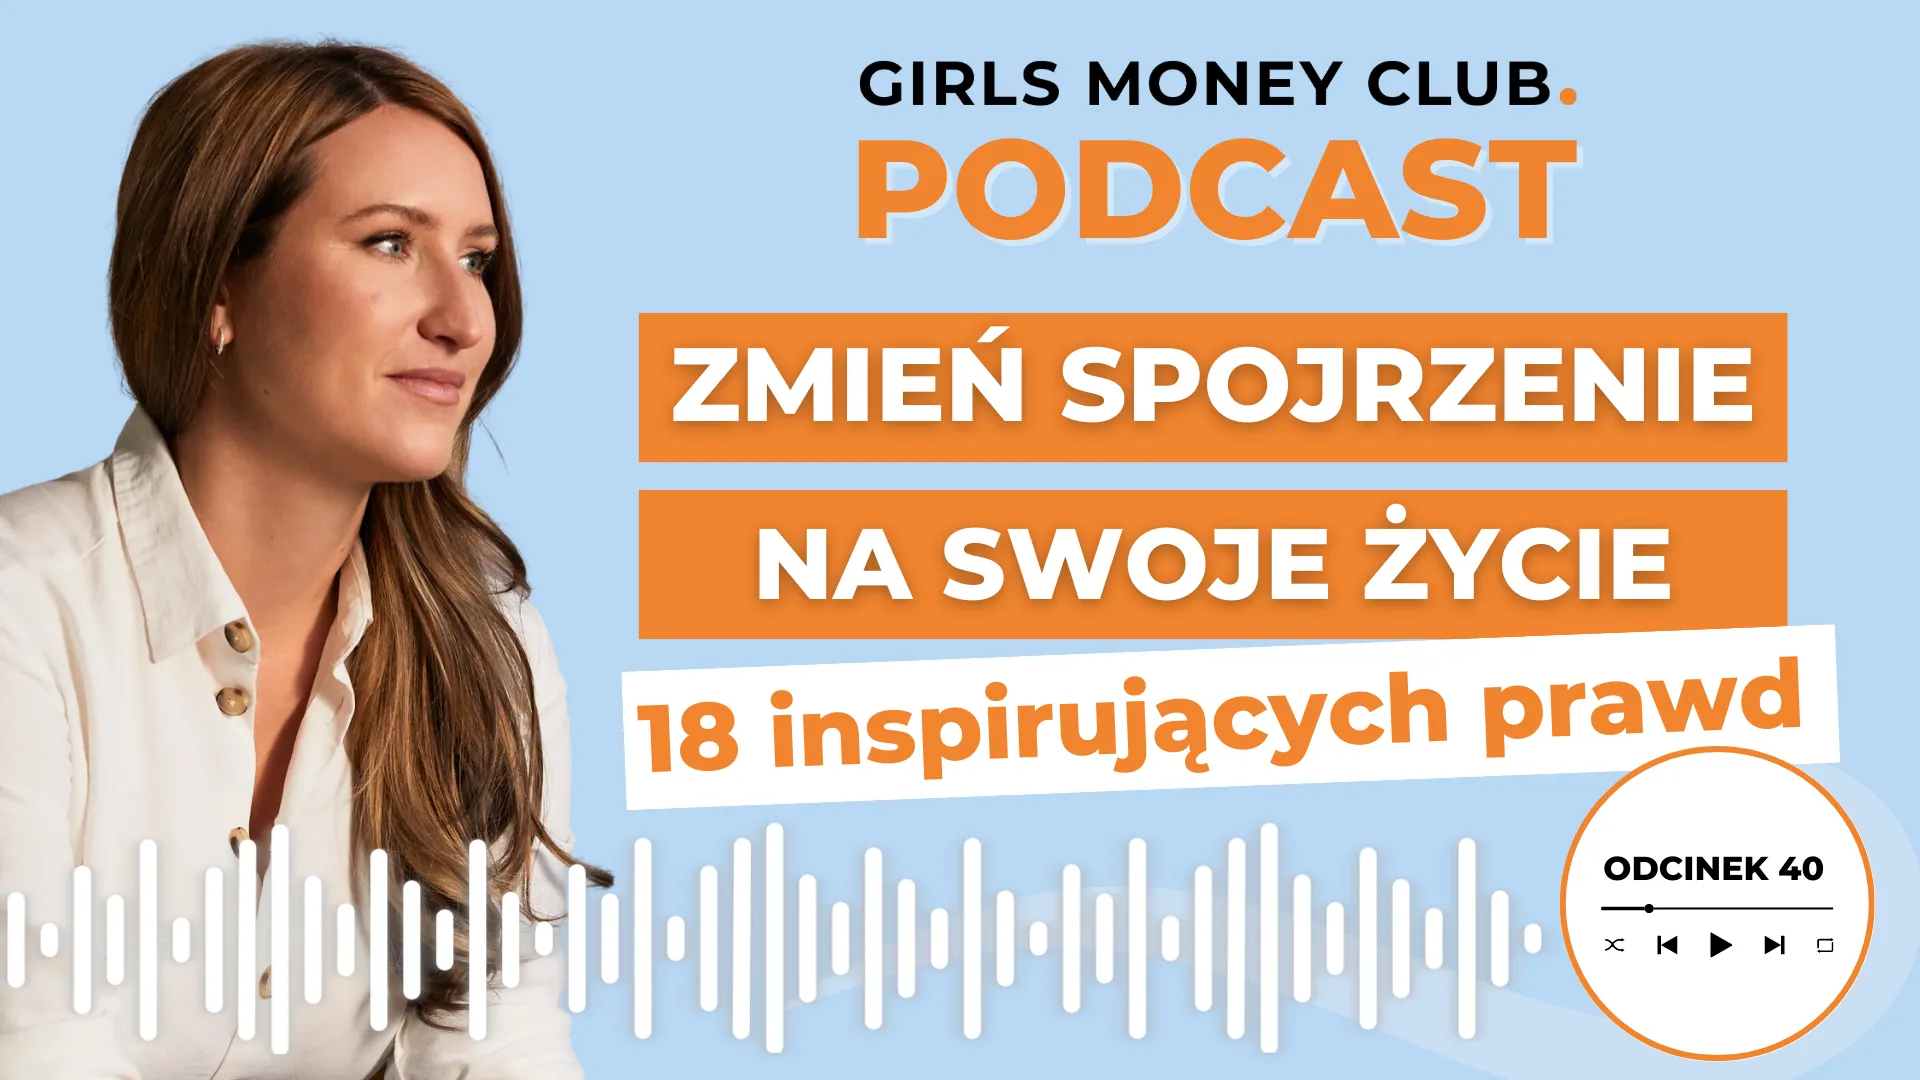 Spojrzenie na życie | Podcast | Girls Money Club